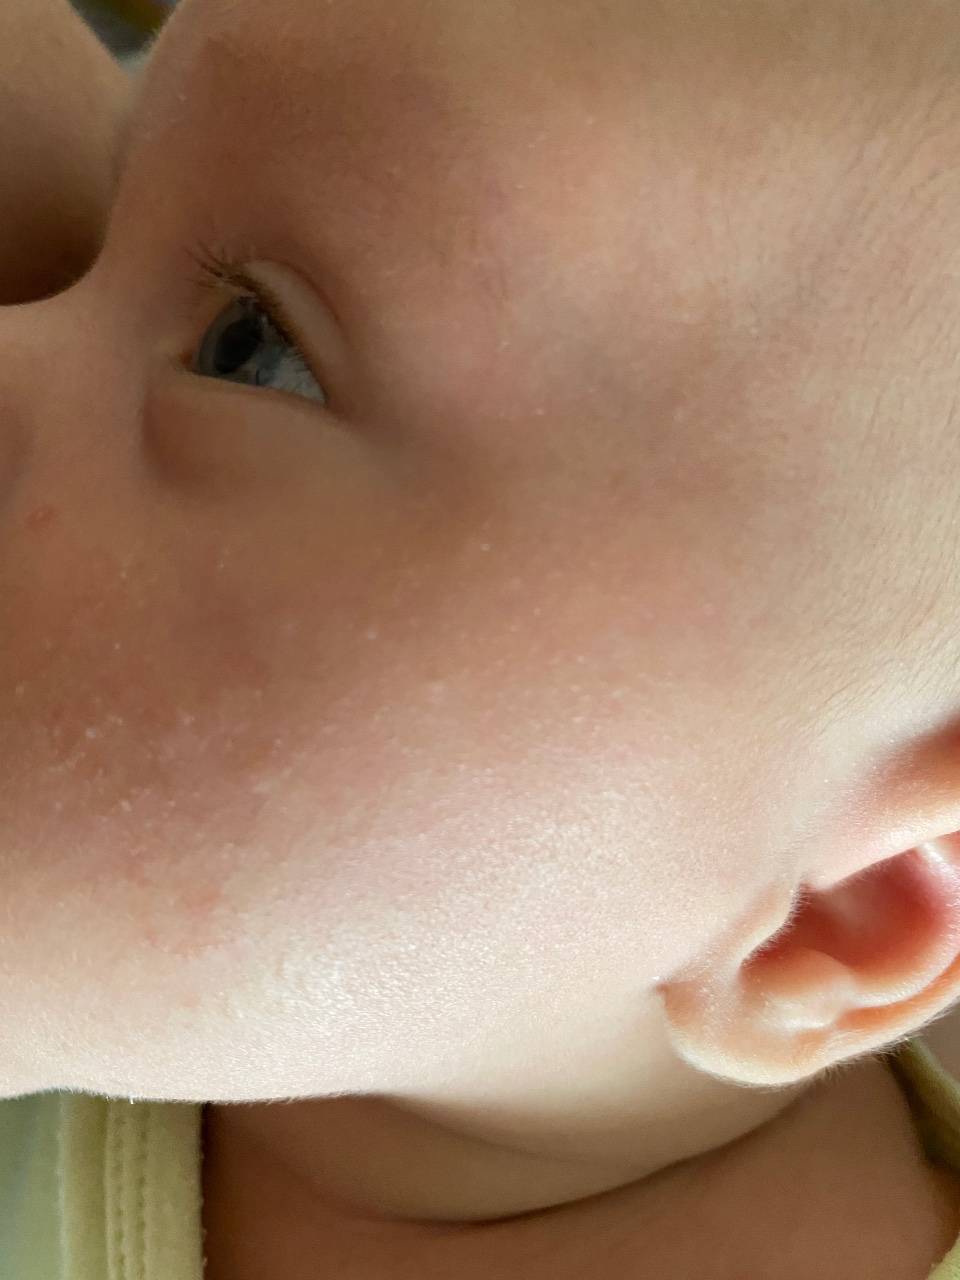 У ребенка на шее шишка под кожей: что это может быть за шарик и как его лечить?